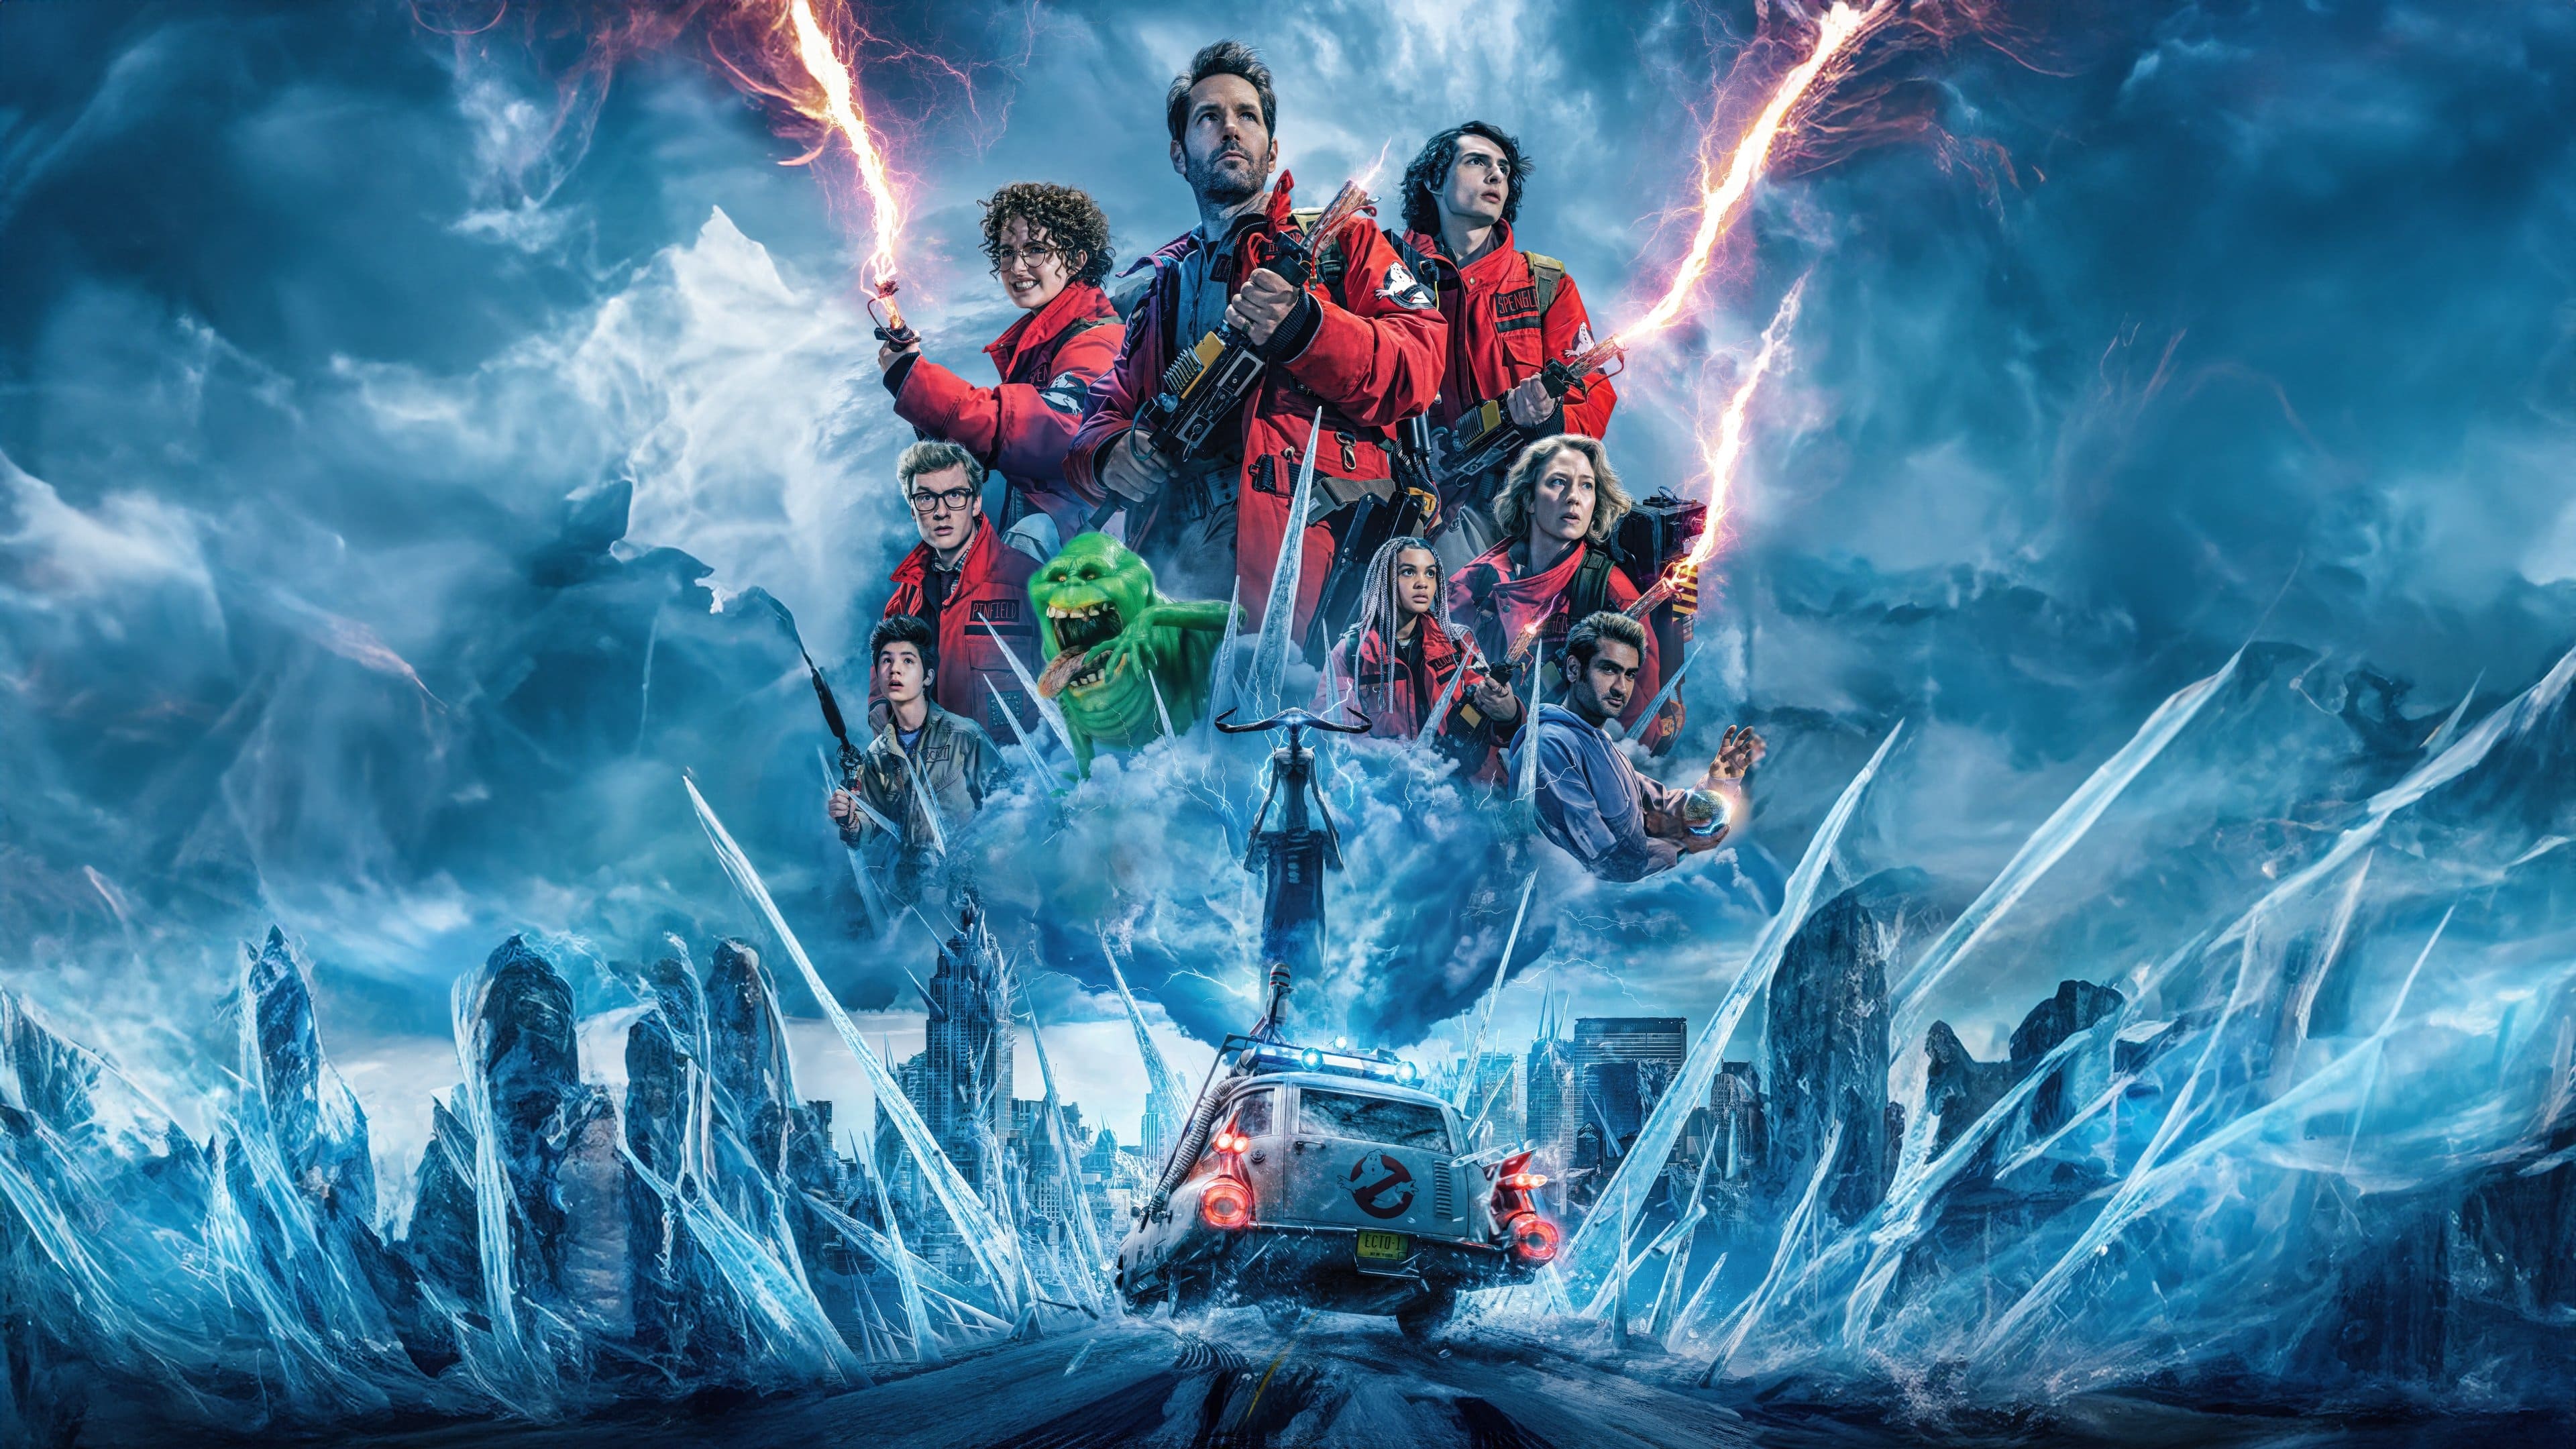 Poster Phim Biệt Đội Săn Ma: Kỷ Nguyên Băng Giá (Ghostbusters: Frozen Empire)